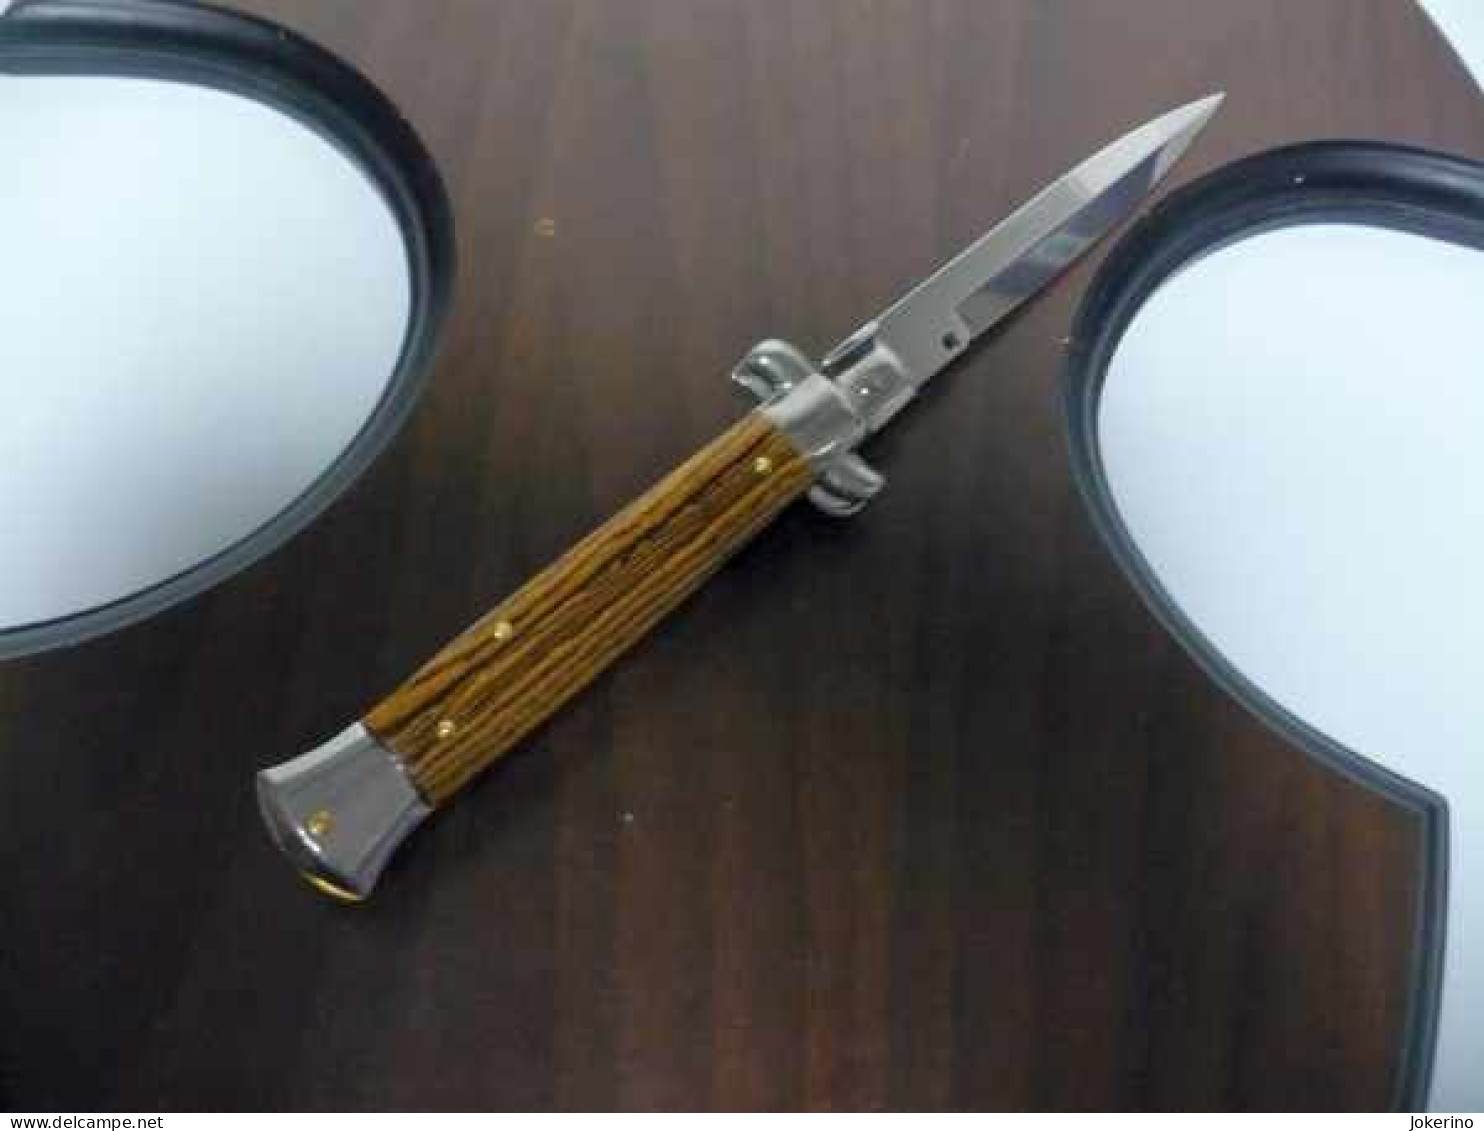 KNIFE-italian stiletto-Maniago -Frank Beltrame-23cm-legno pregiato ZIRICOTE - WOOD Modello FB 23/83B - NOVITA'